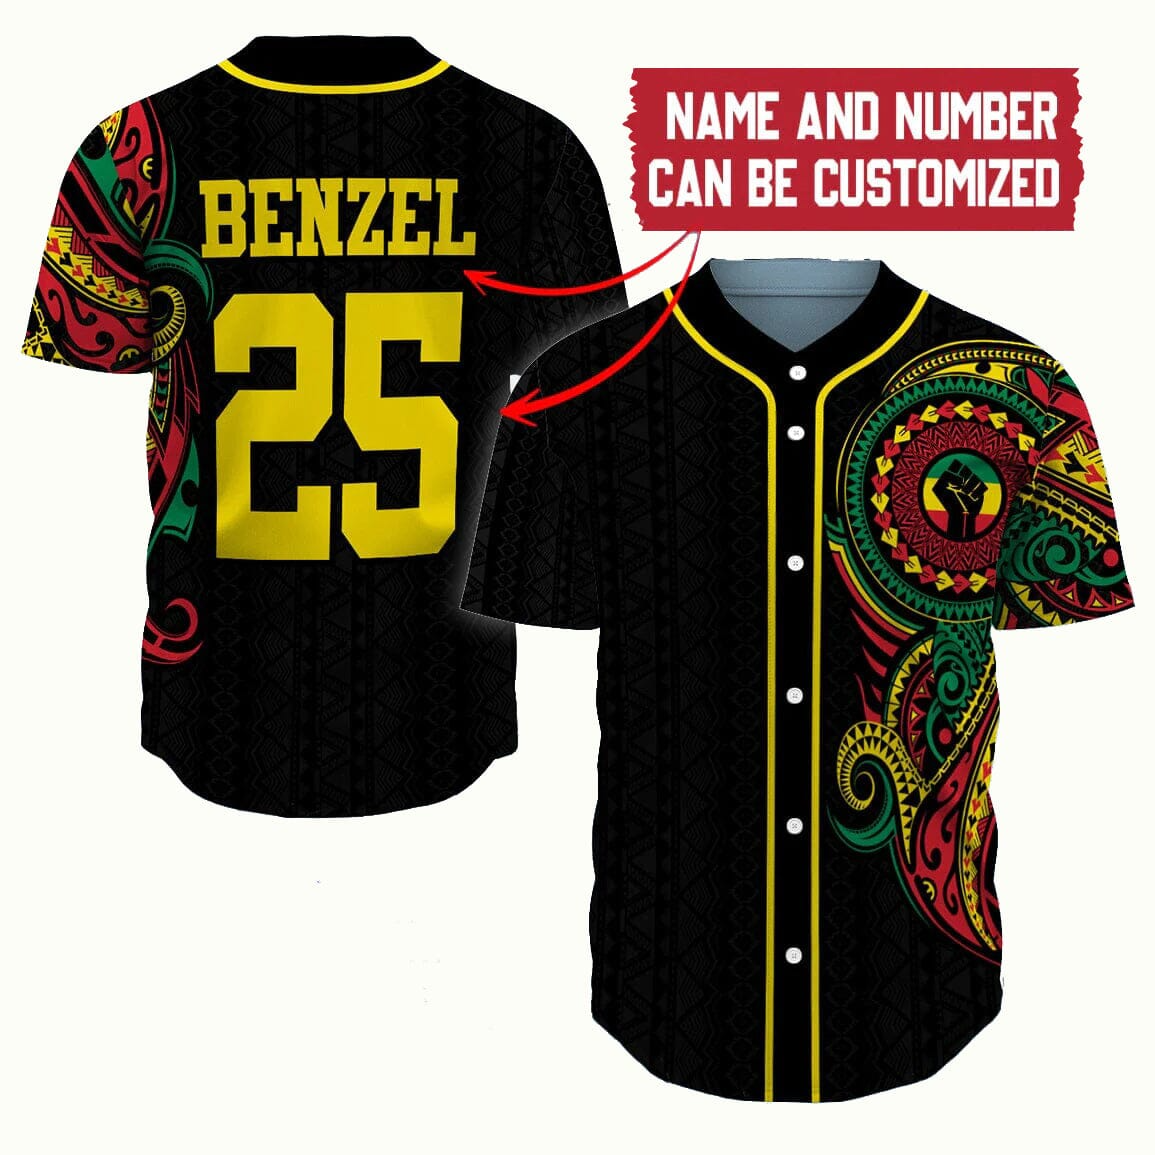 Customized Juneteenth Baseball Jersey Shirt - Personalized African Soul, Juneteenth Shirt Baseball Jersey - Perfect Gift For Juneteenth